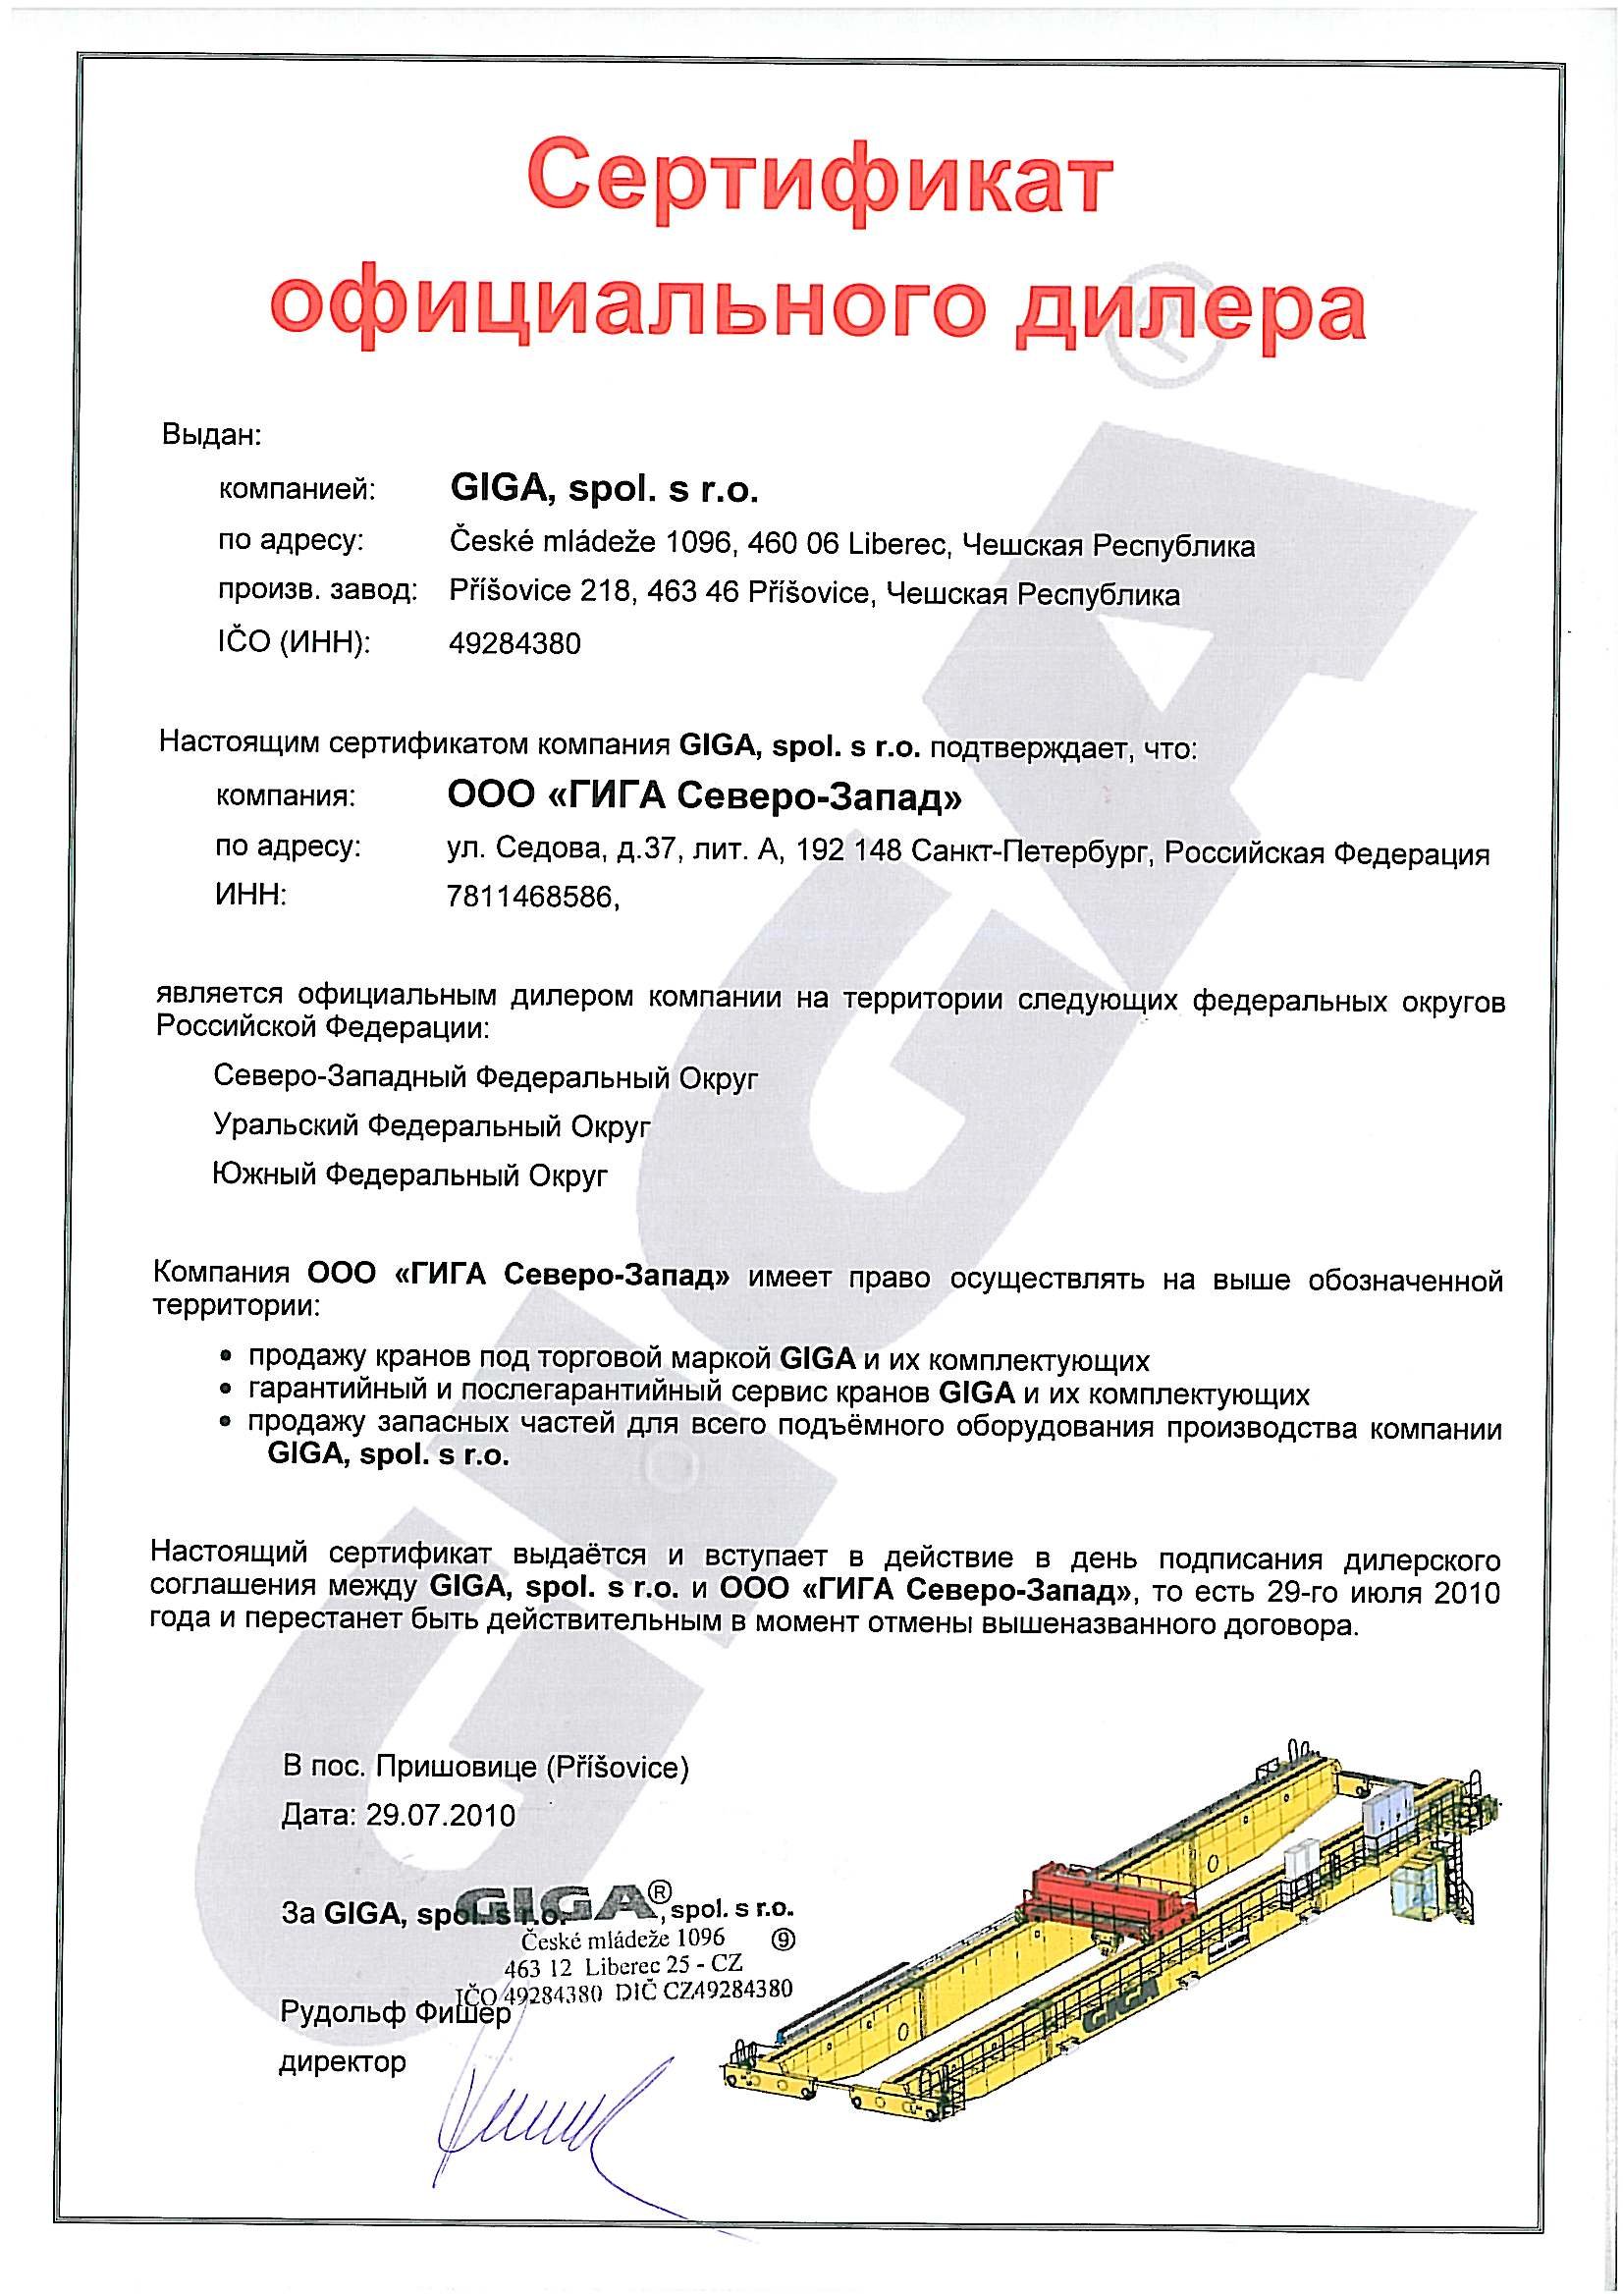 Сертификат официального дилера GIGA на территории РФ